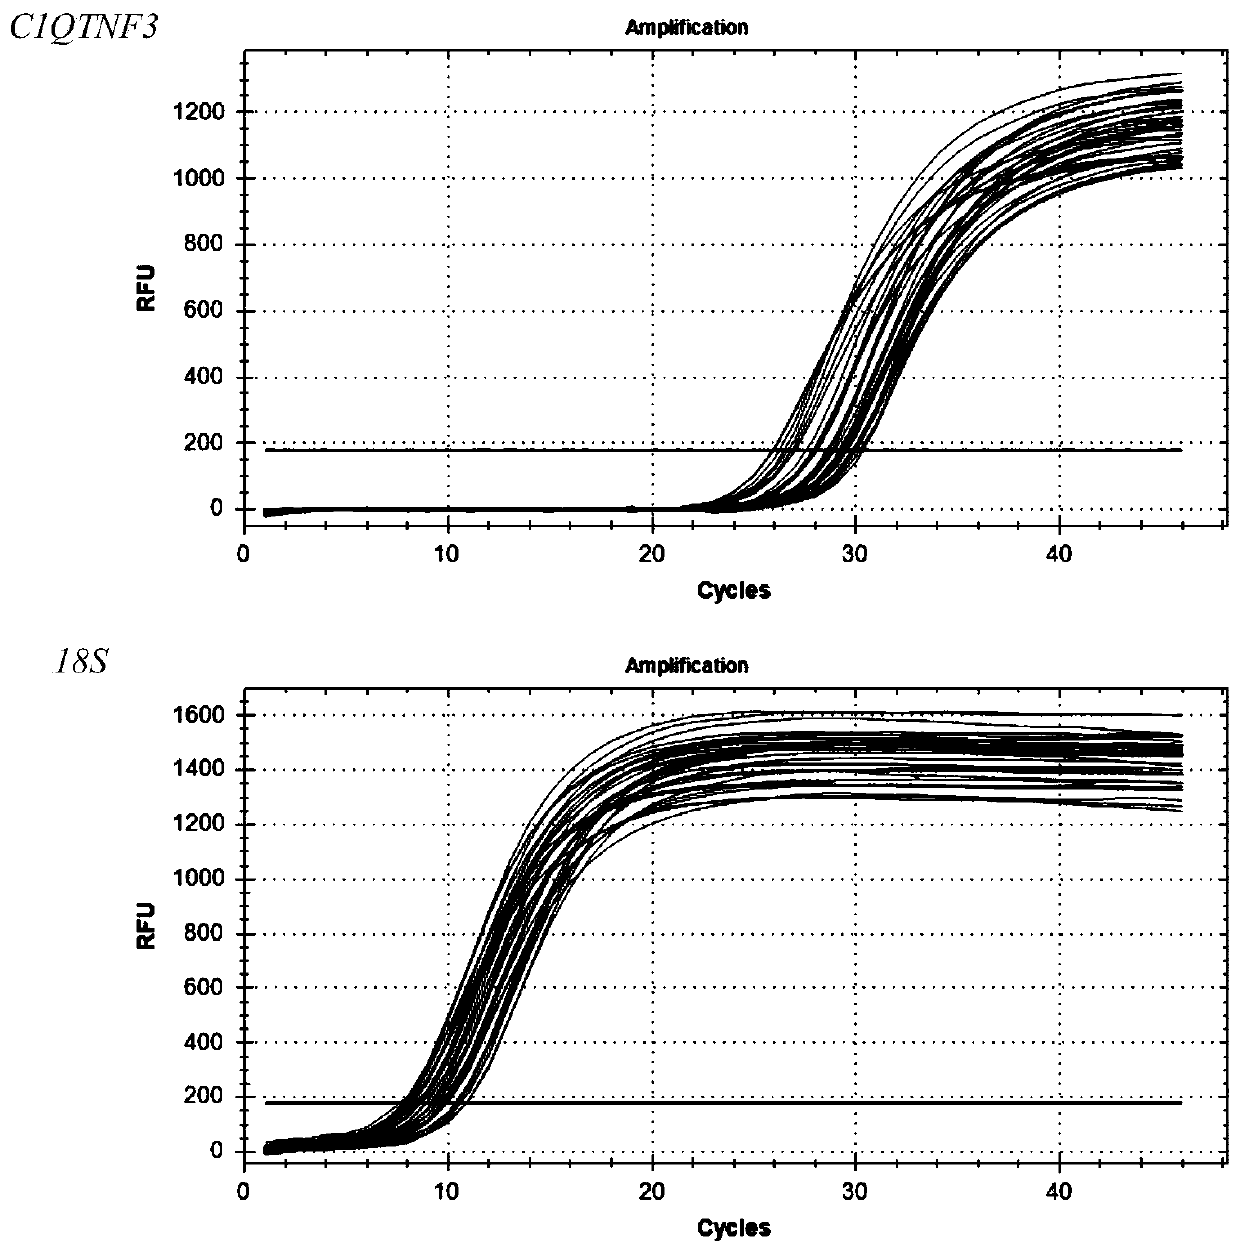 Primer, kit and detection method for detecting C1QTNF3 gene 219bp-deletion variable spliceosome